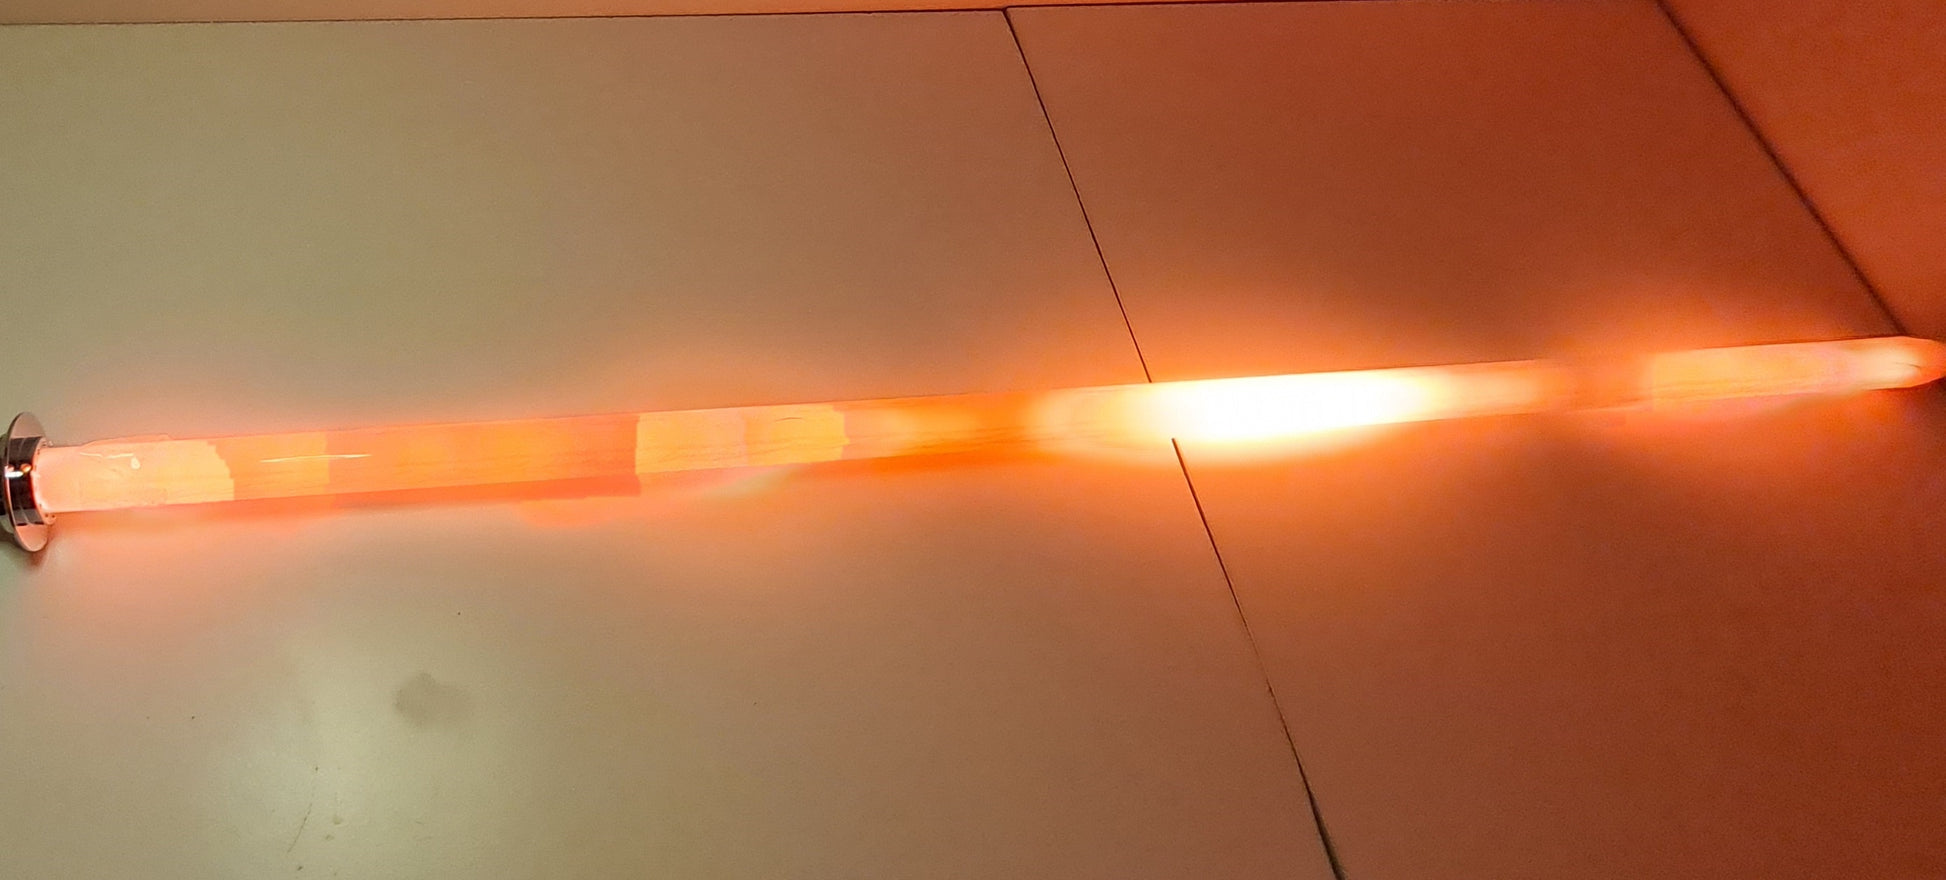 Neopixel Light Saber Blade PVC Metal Saber LED Pixel Blade Lightning Stik